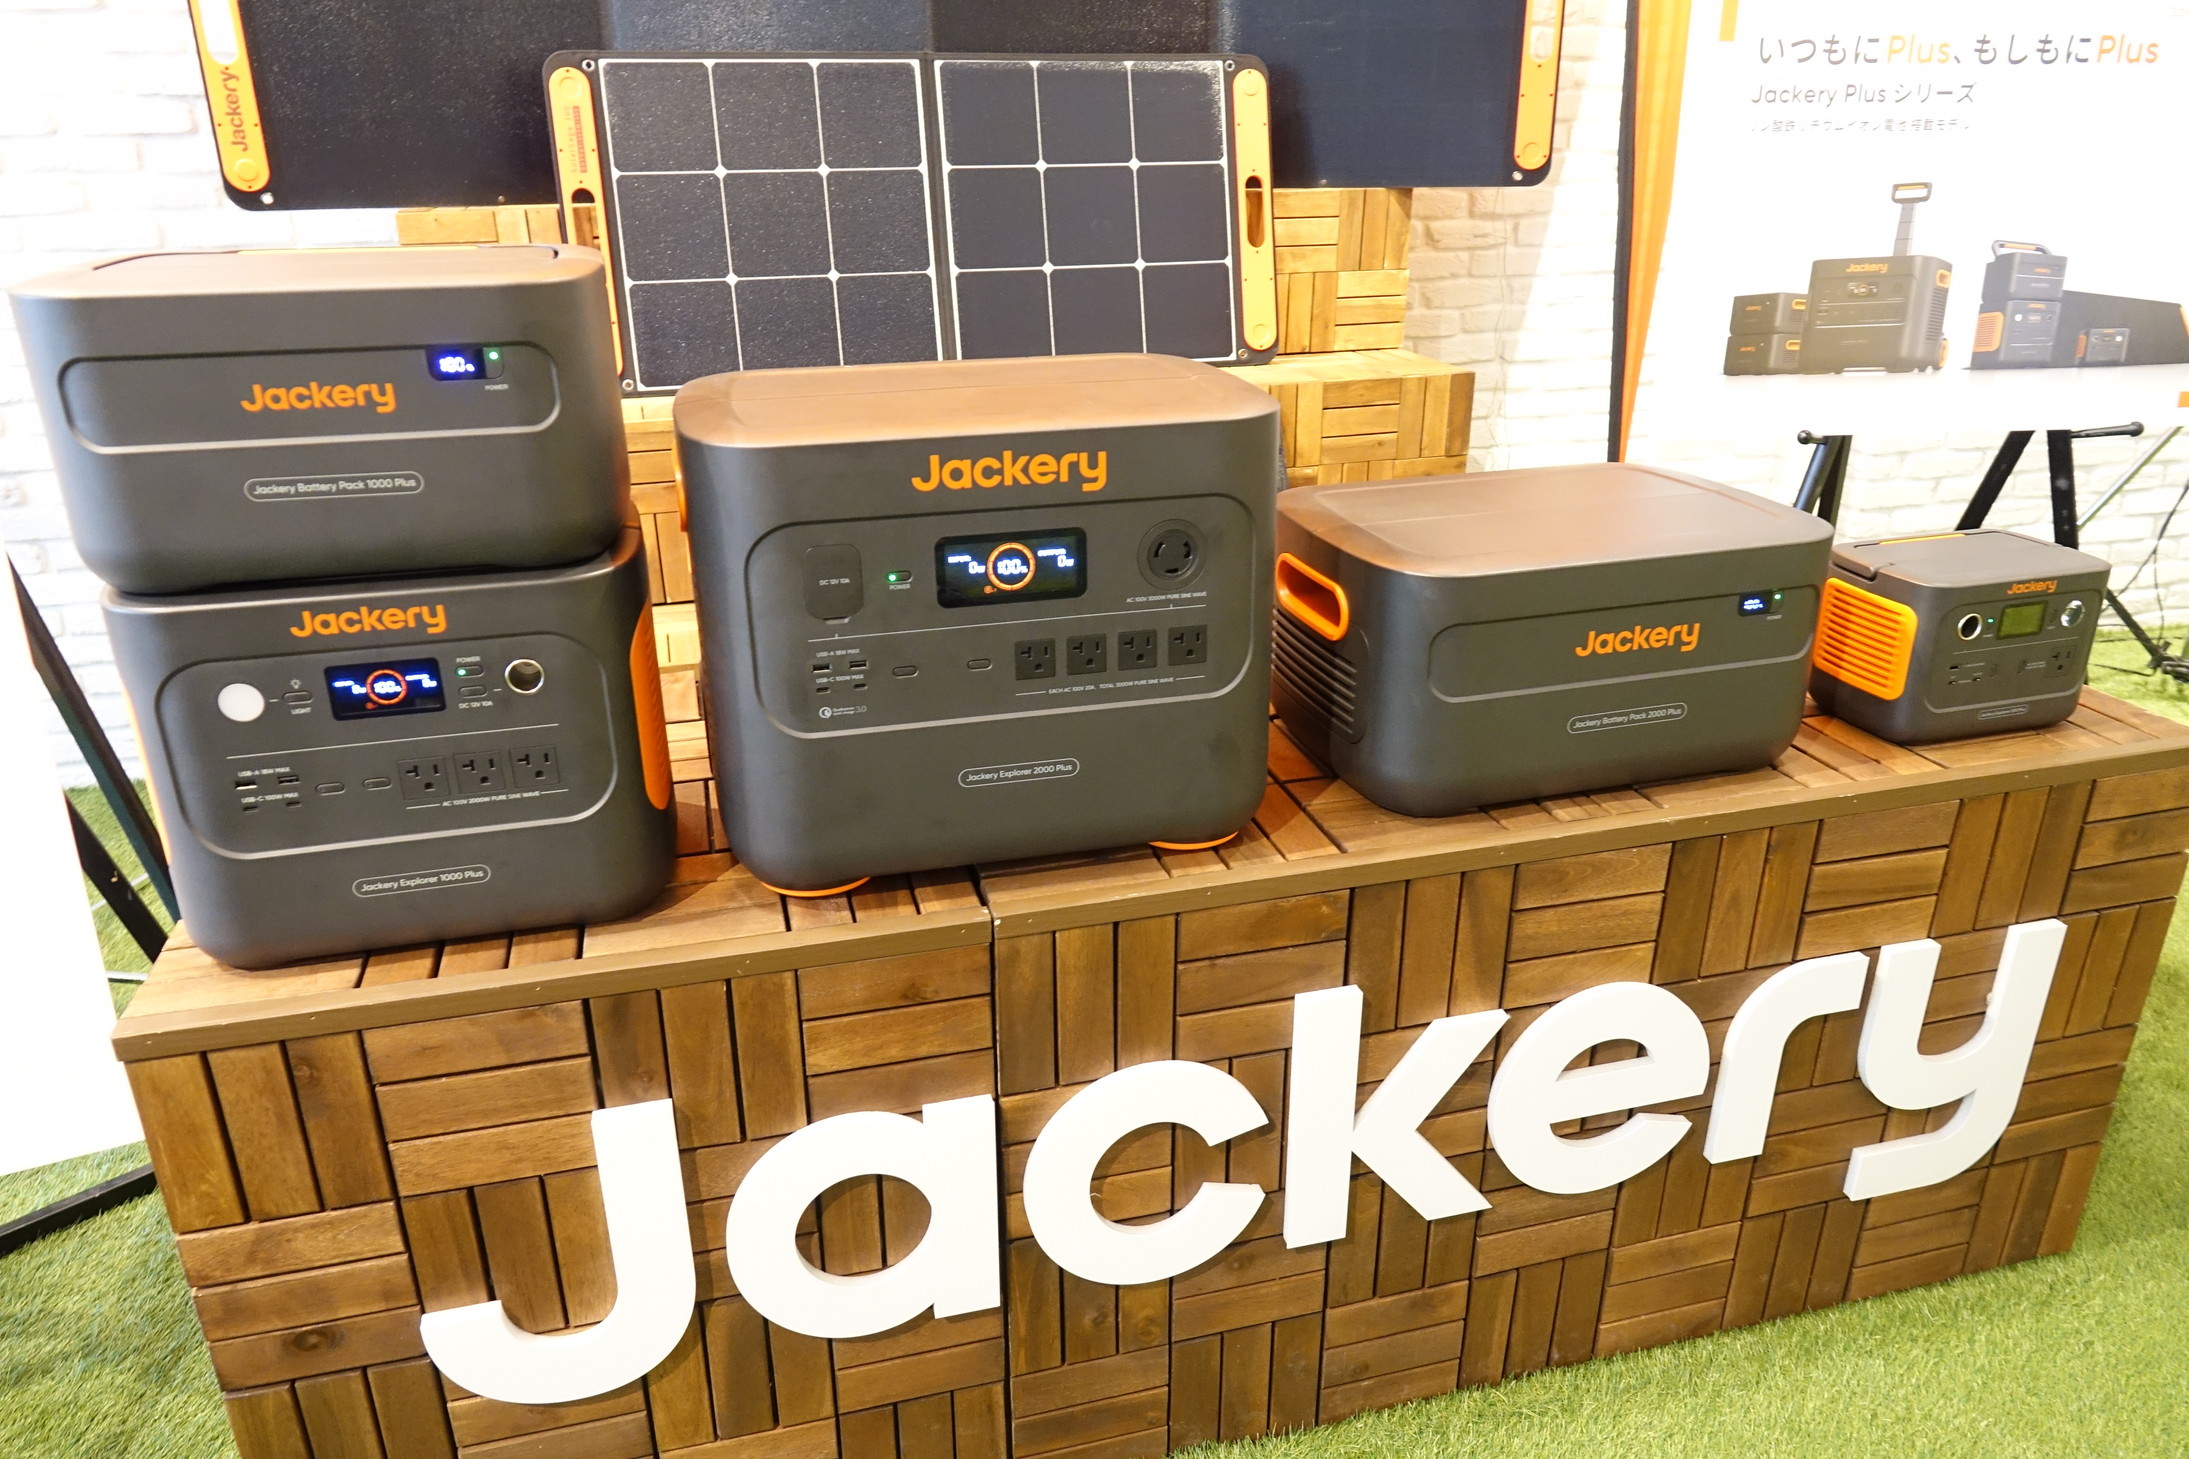 Jackery、スーツケースのように持ち運べるリン酸鉄の大型ポータブル電源「Jackery 2000 Plus」など3機種を発表 - ケータイ  Watch